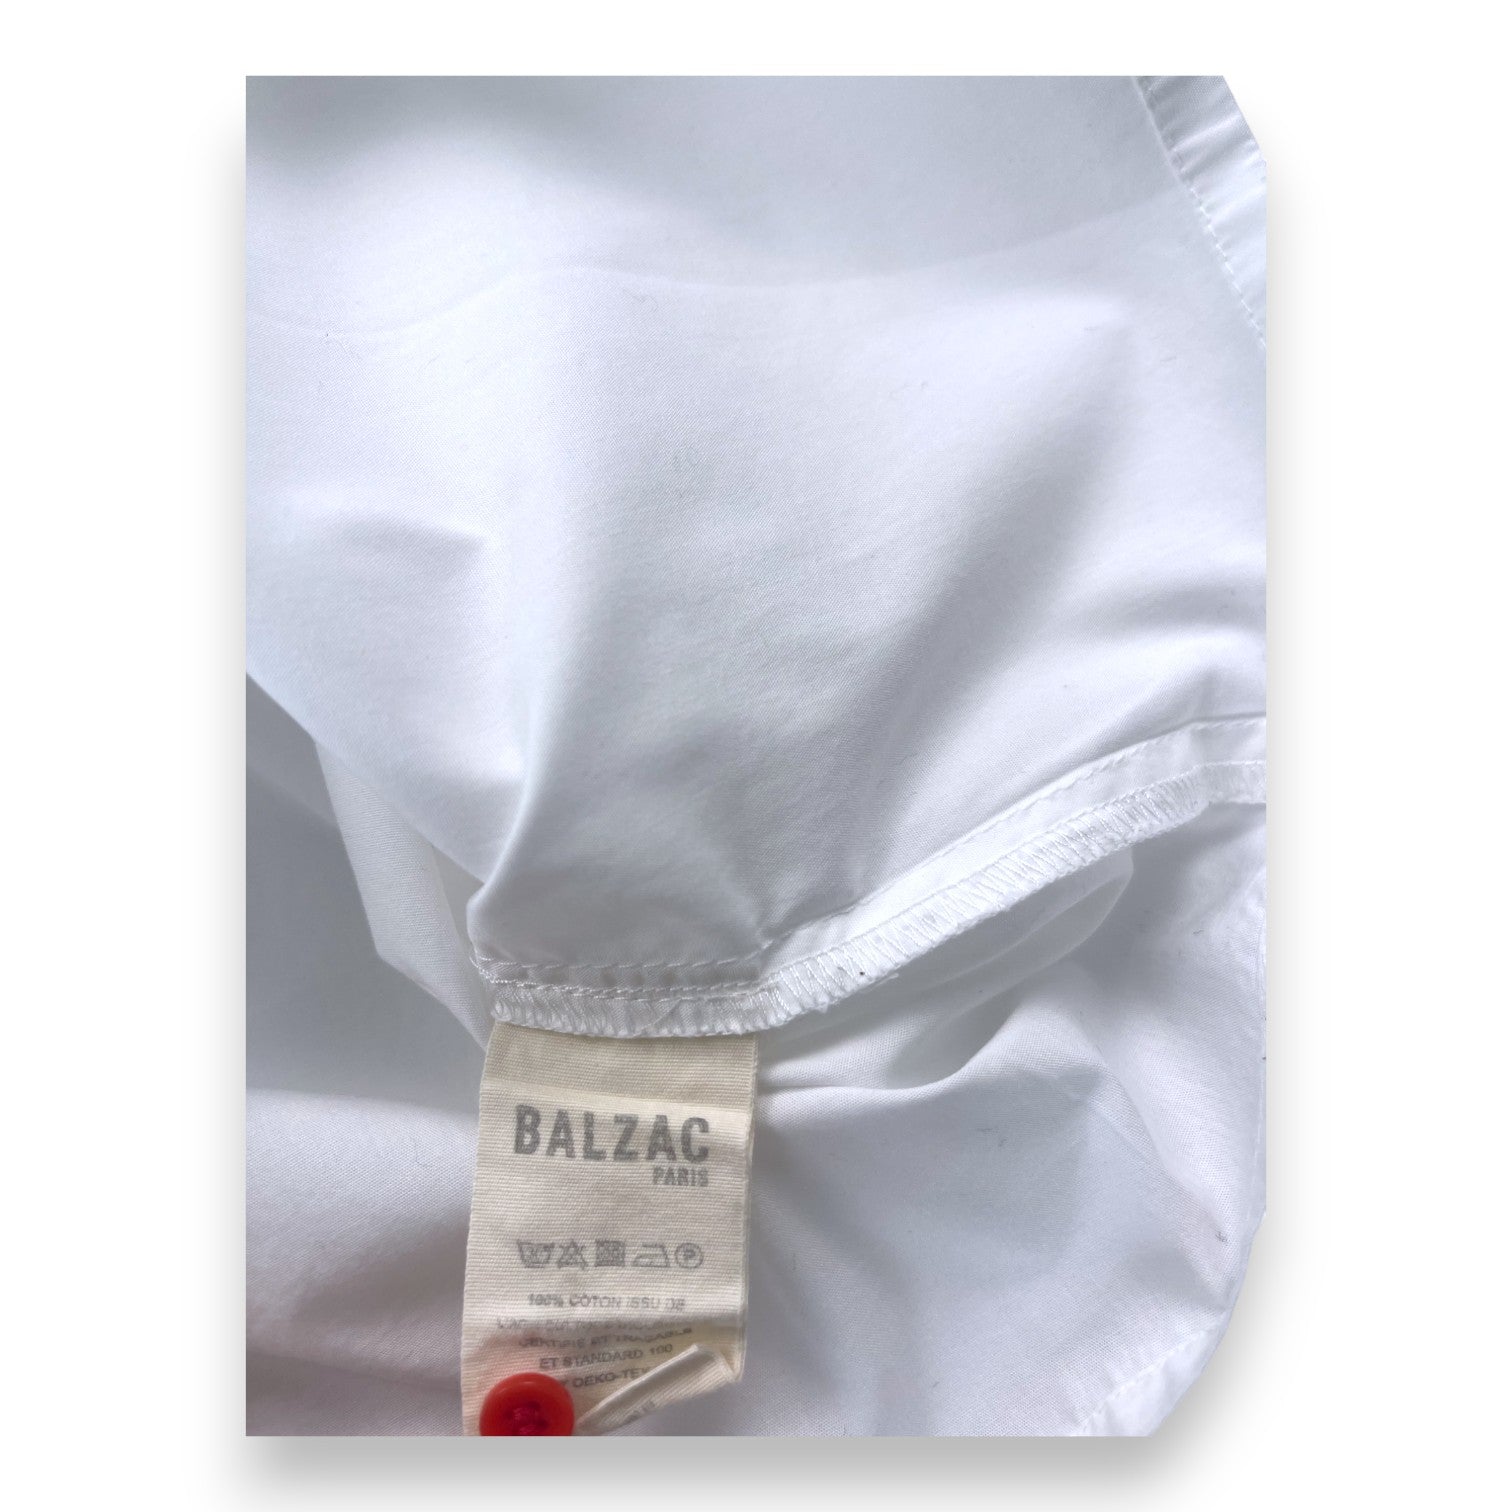 BALZAC - Ensemble blouse blanche et pantalon vichy rose - 8 ans